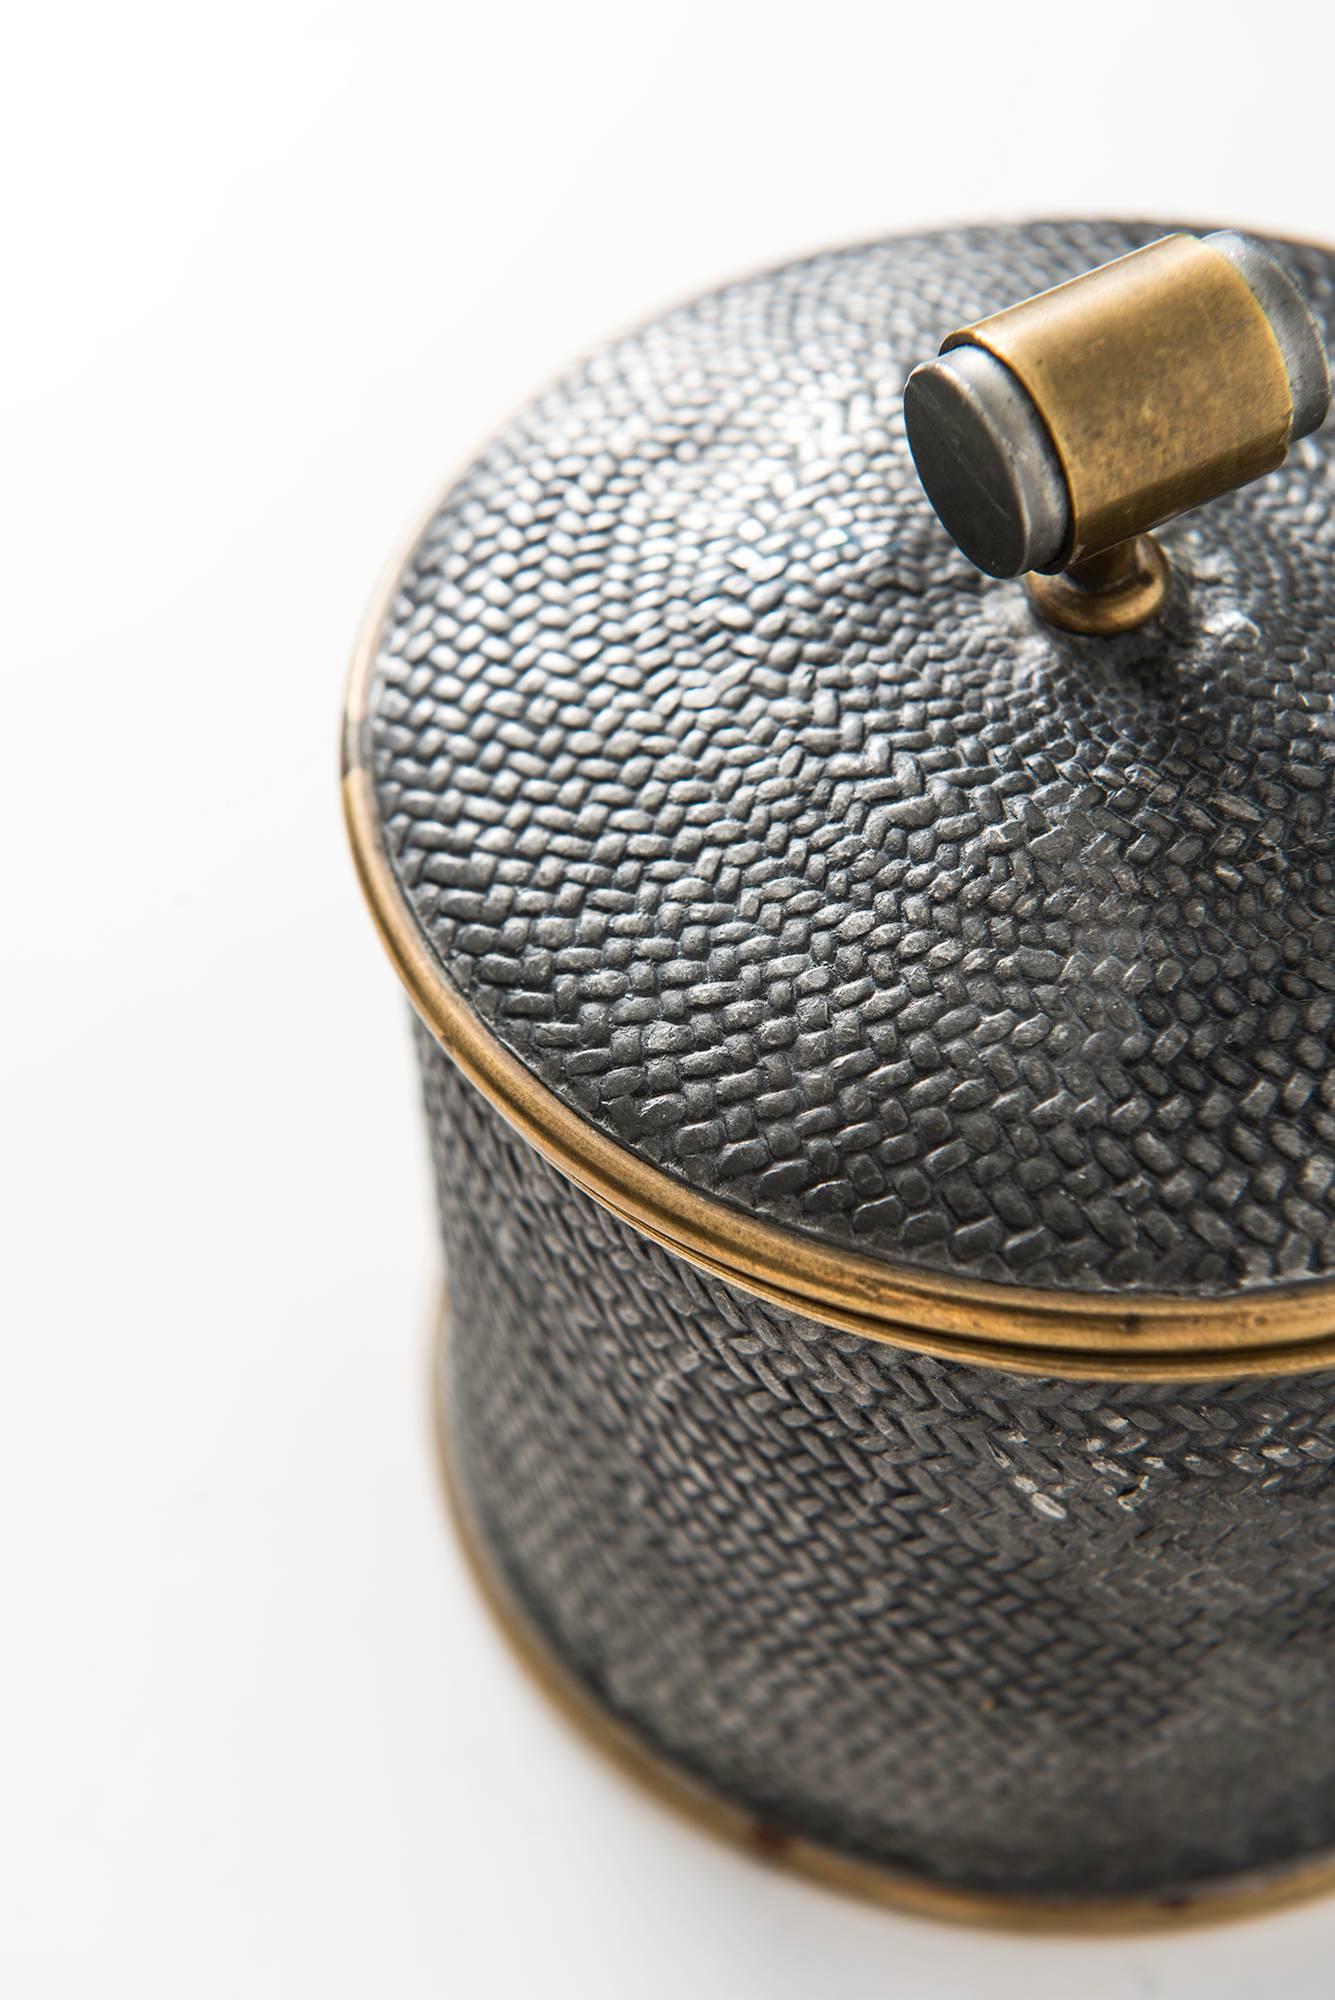 Rare pewter jar designed by Estrid Ericsson. Produced by Svenskt Tenn in Sweden.